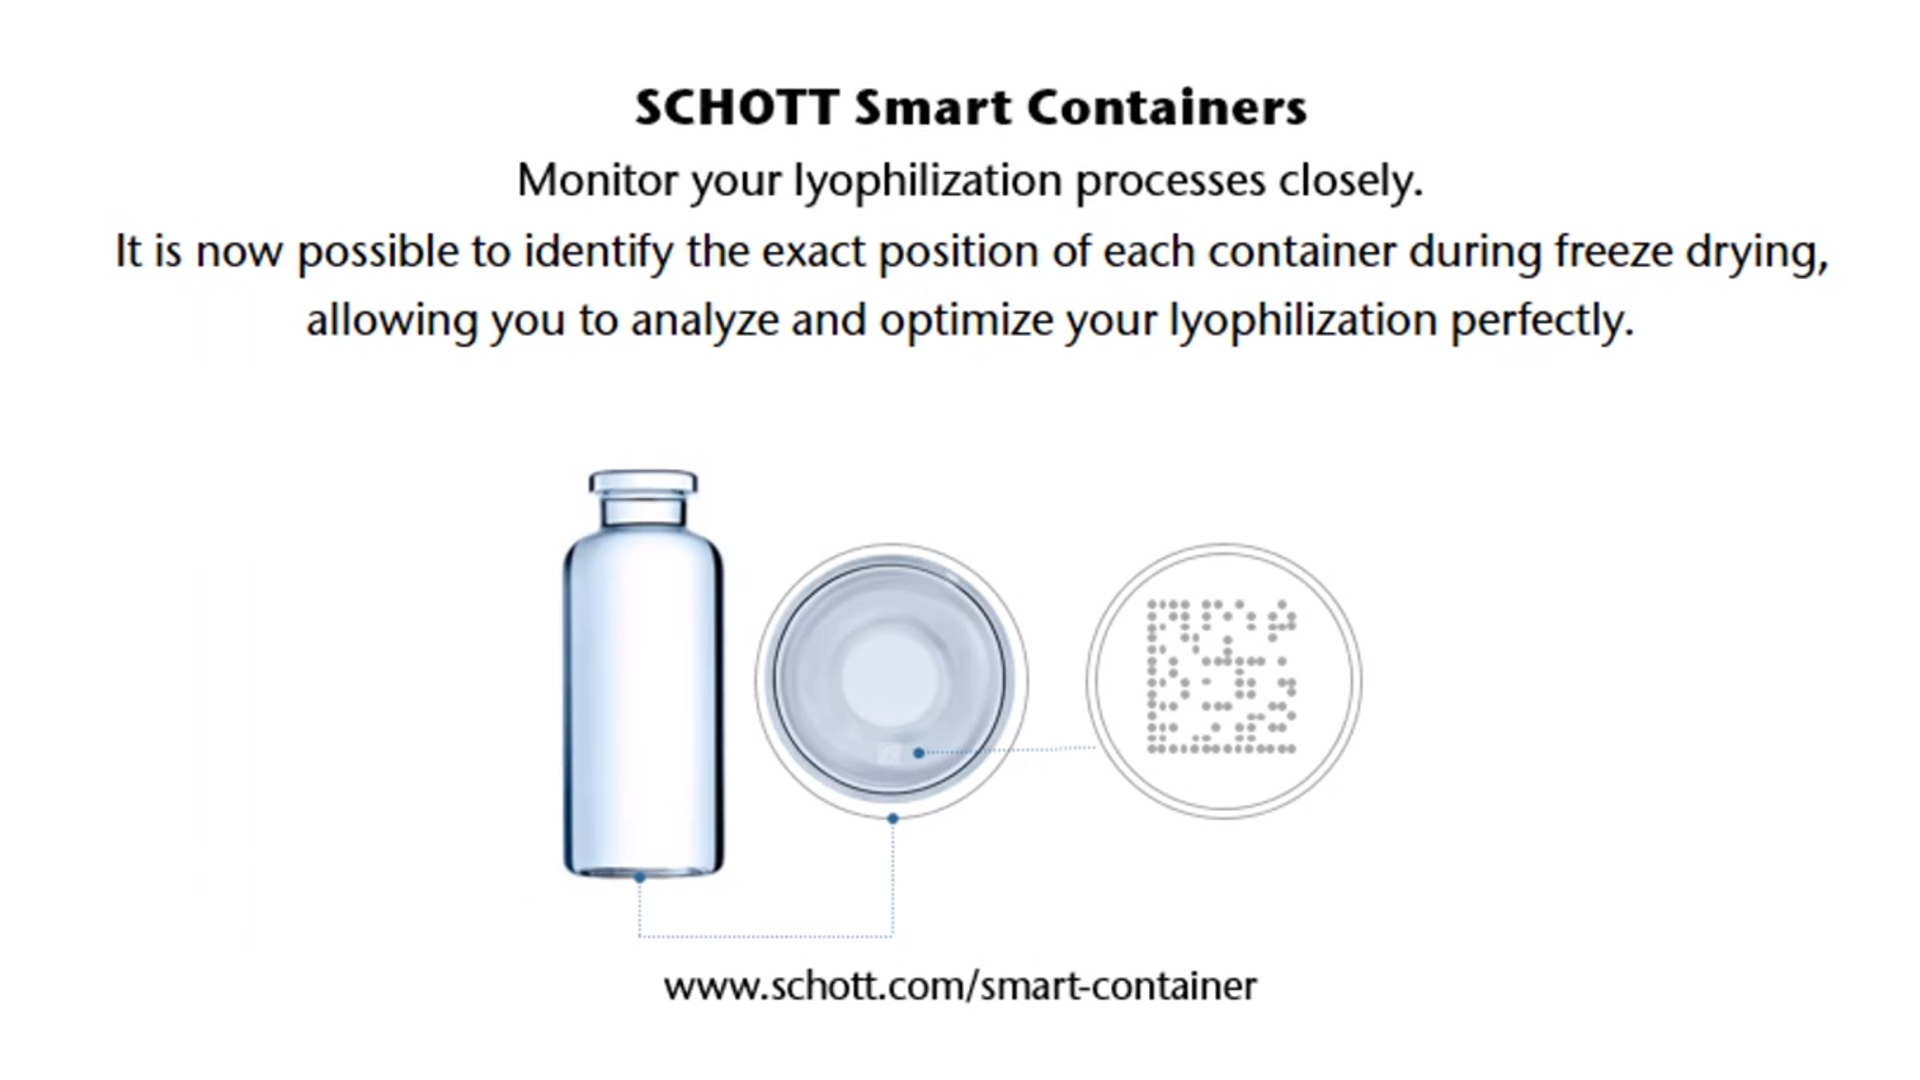 Vídeo mostrando como os Smart Containers da SCHOTT monitoram o processo de liofilização